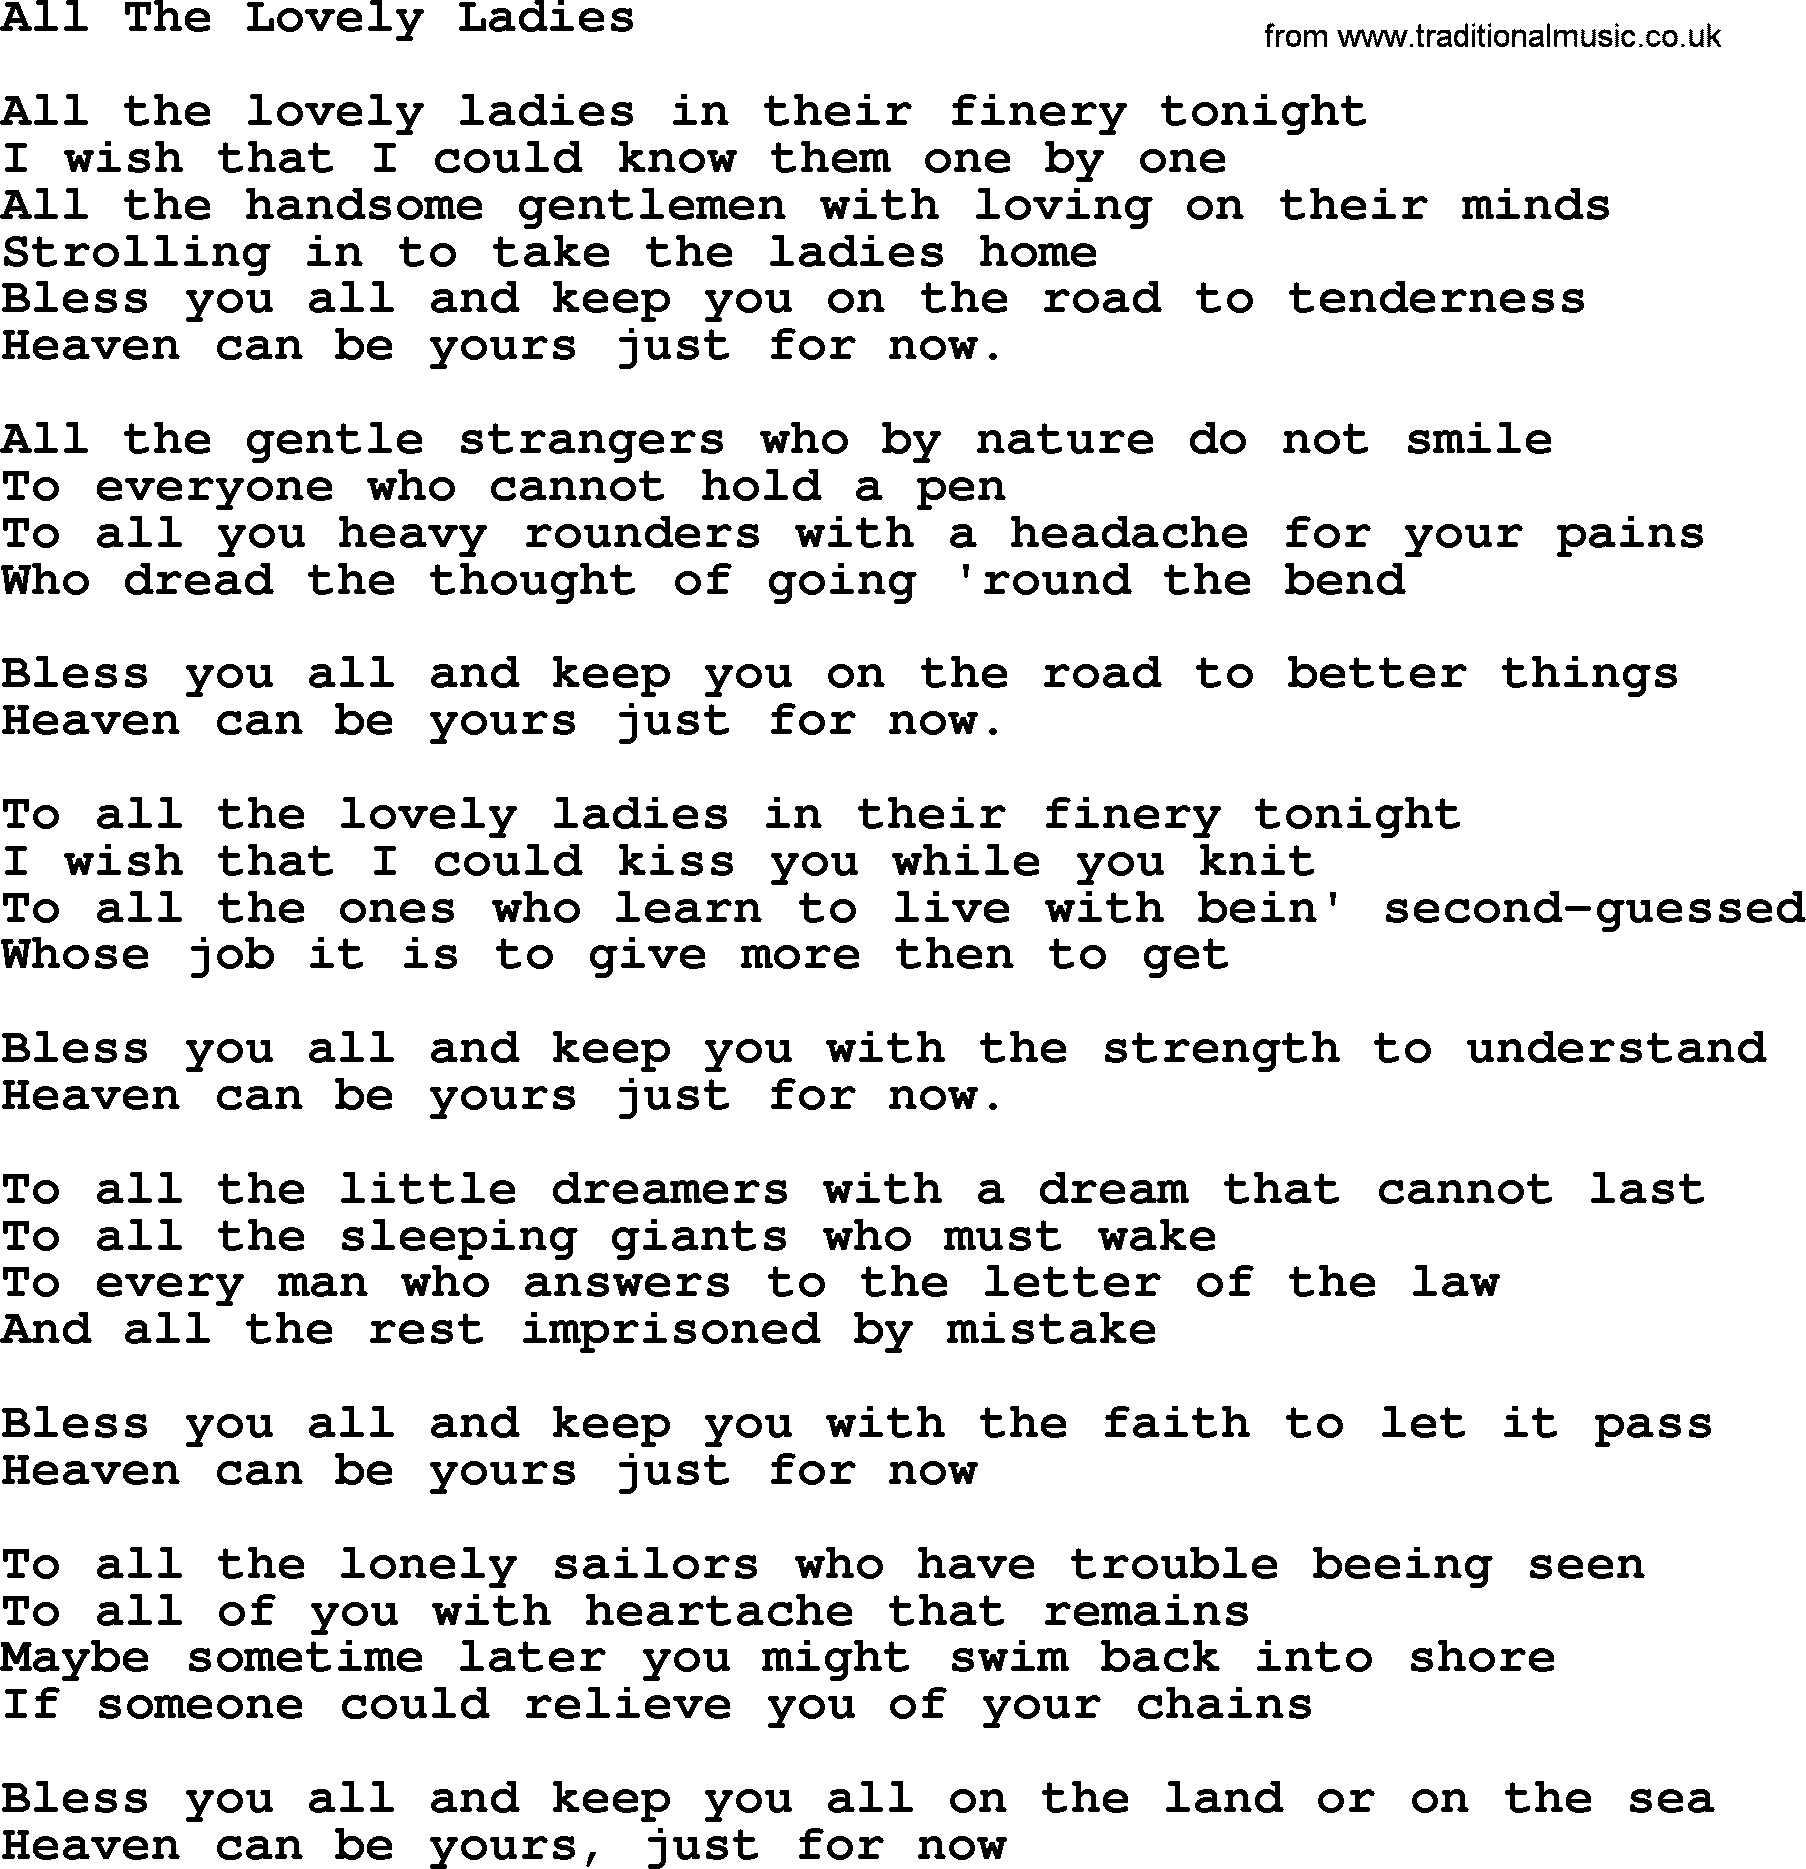 Gordon Lightfoot song All The Lovely Ladies, lyrics